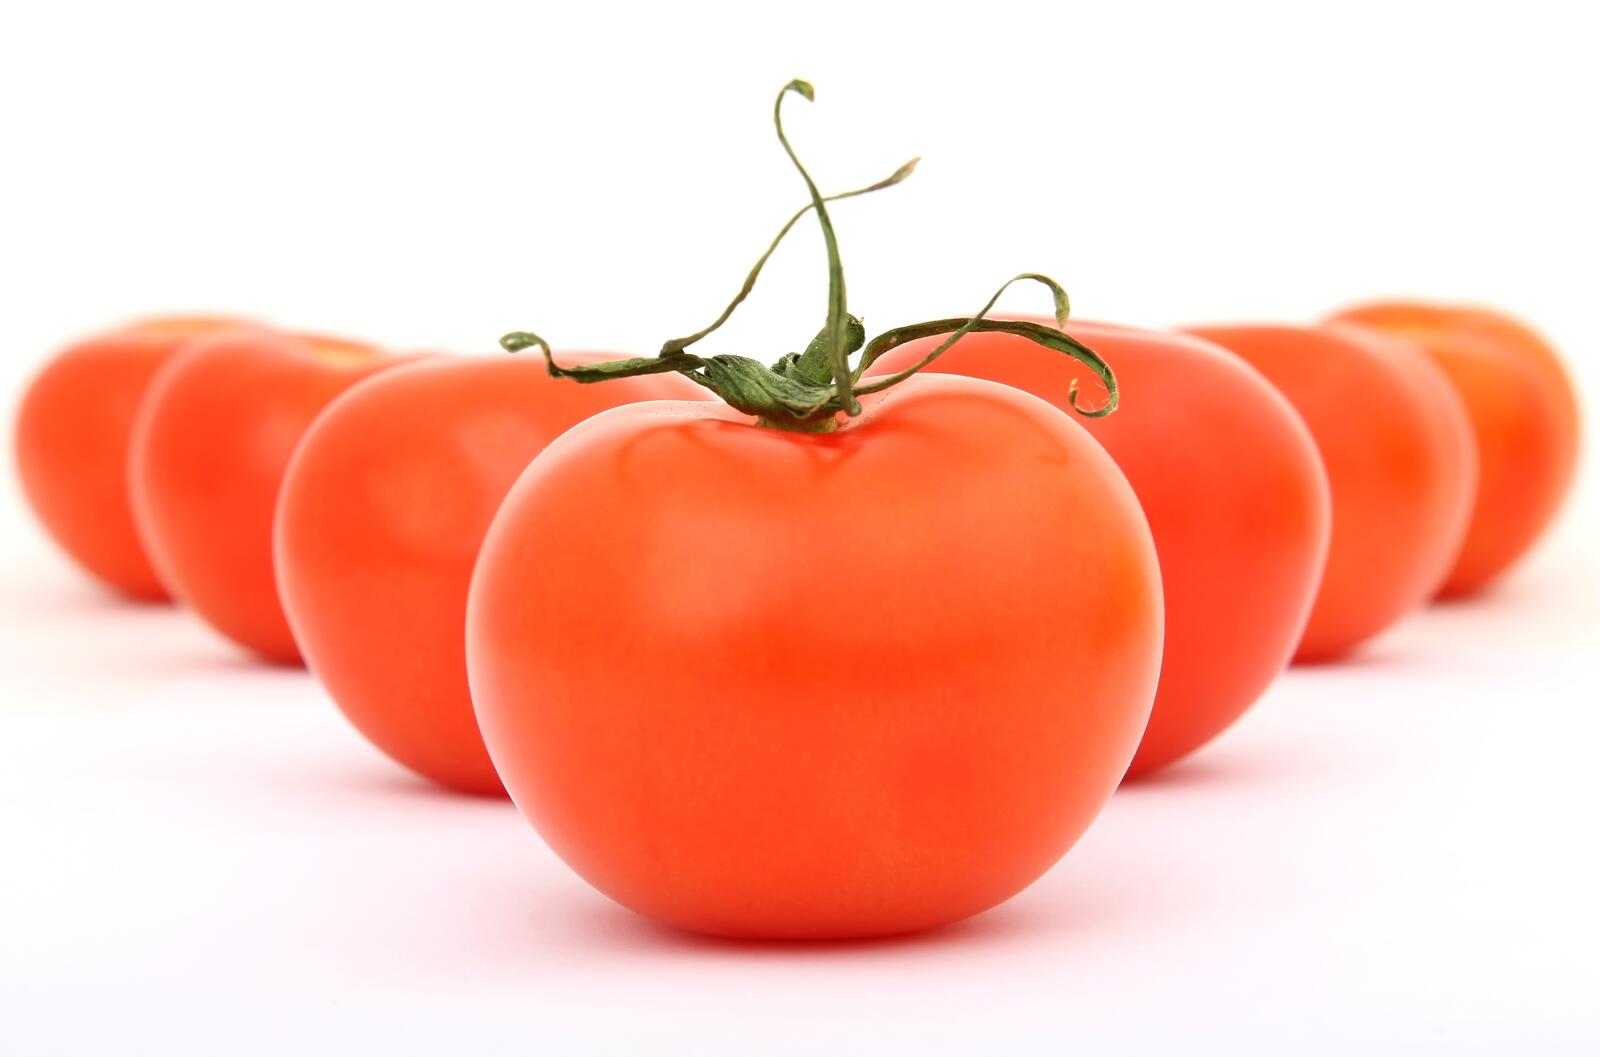 Wallpapers tomato vegetable fresh on the desktop